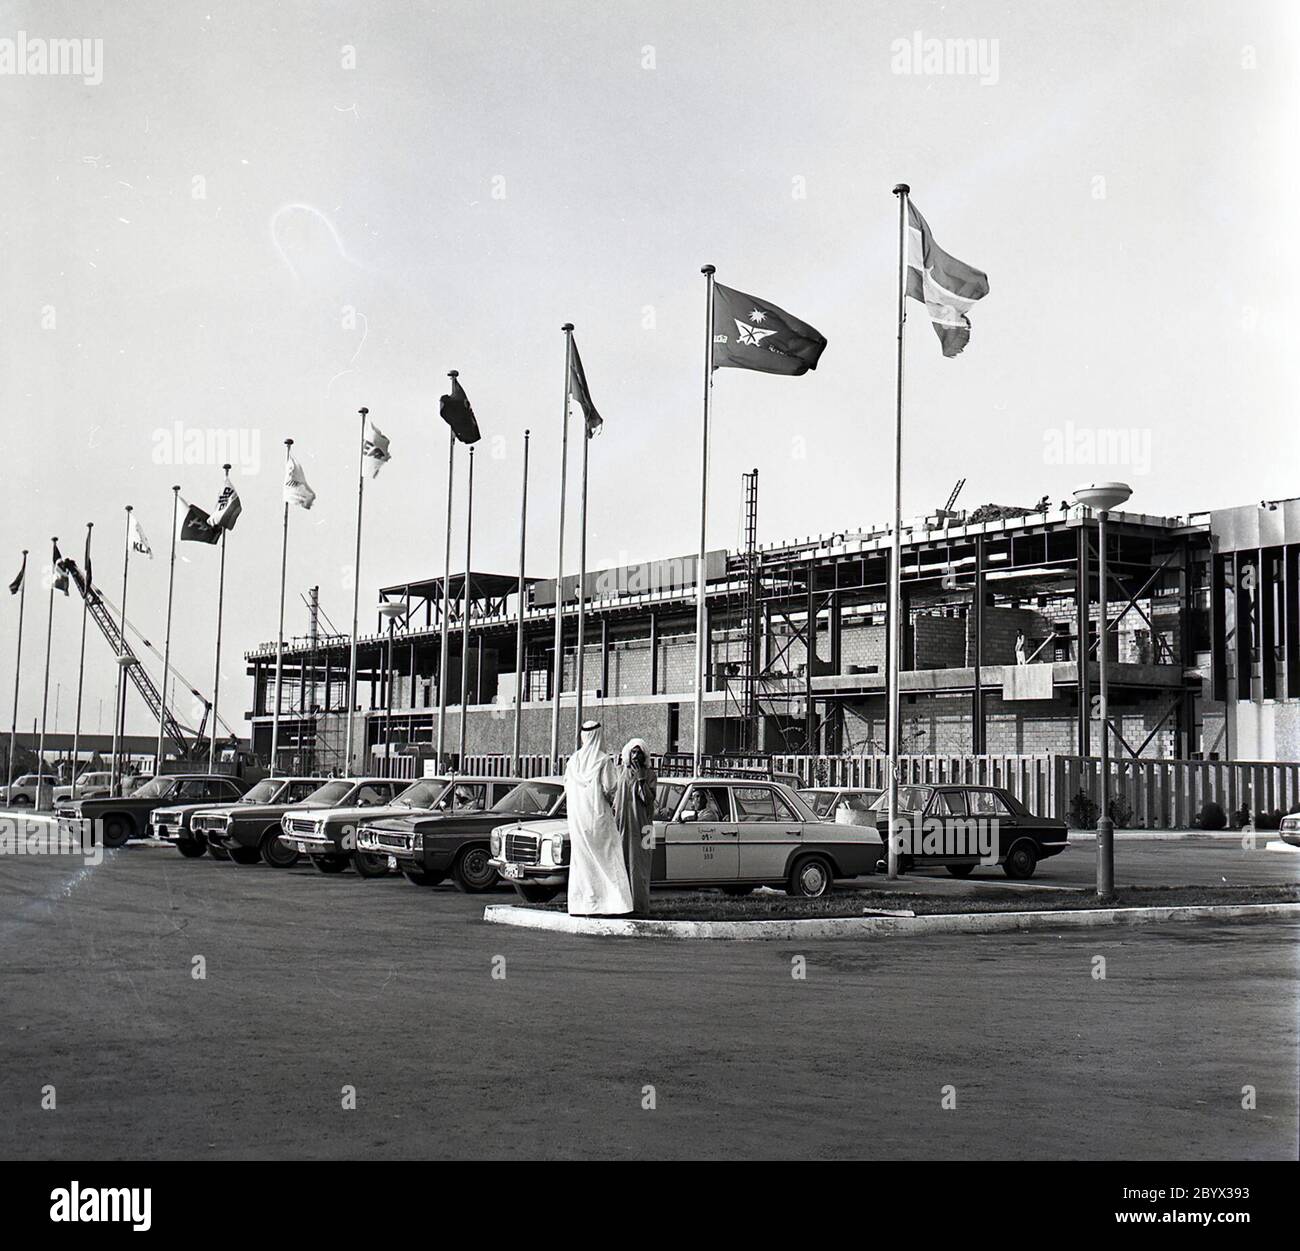 Une photographie de l'extérieur de l'aéroport international de Bahreïn en décembre 1975. Les taxis stationnés sont visibles au premier plan parmi les mâts de drapeaux Banque D'Images